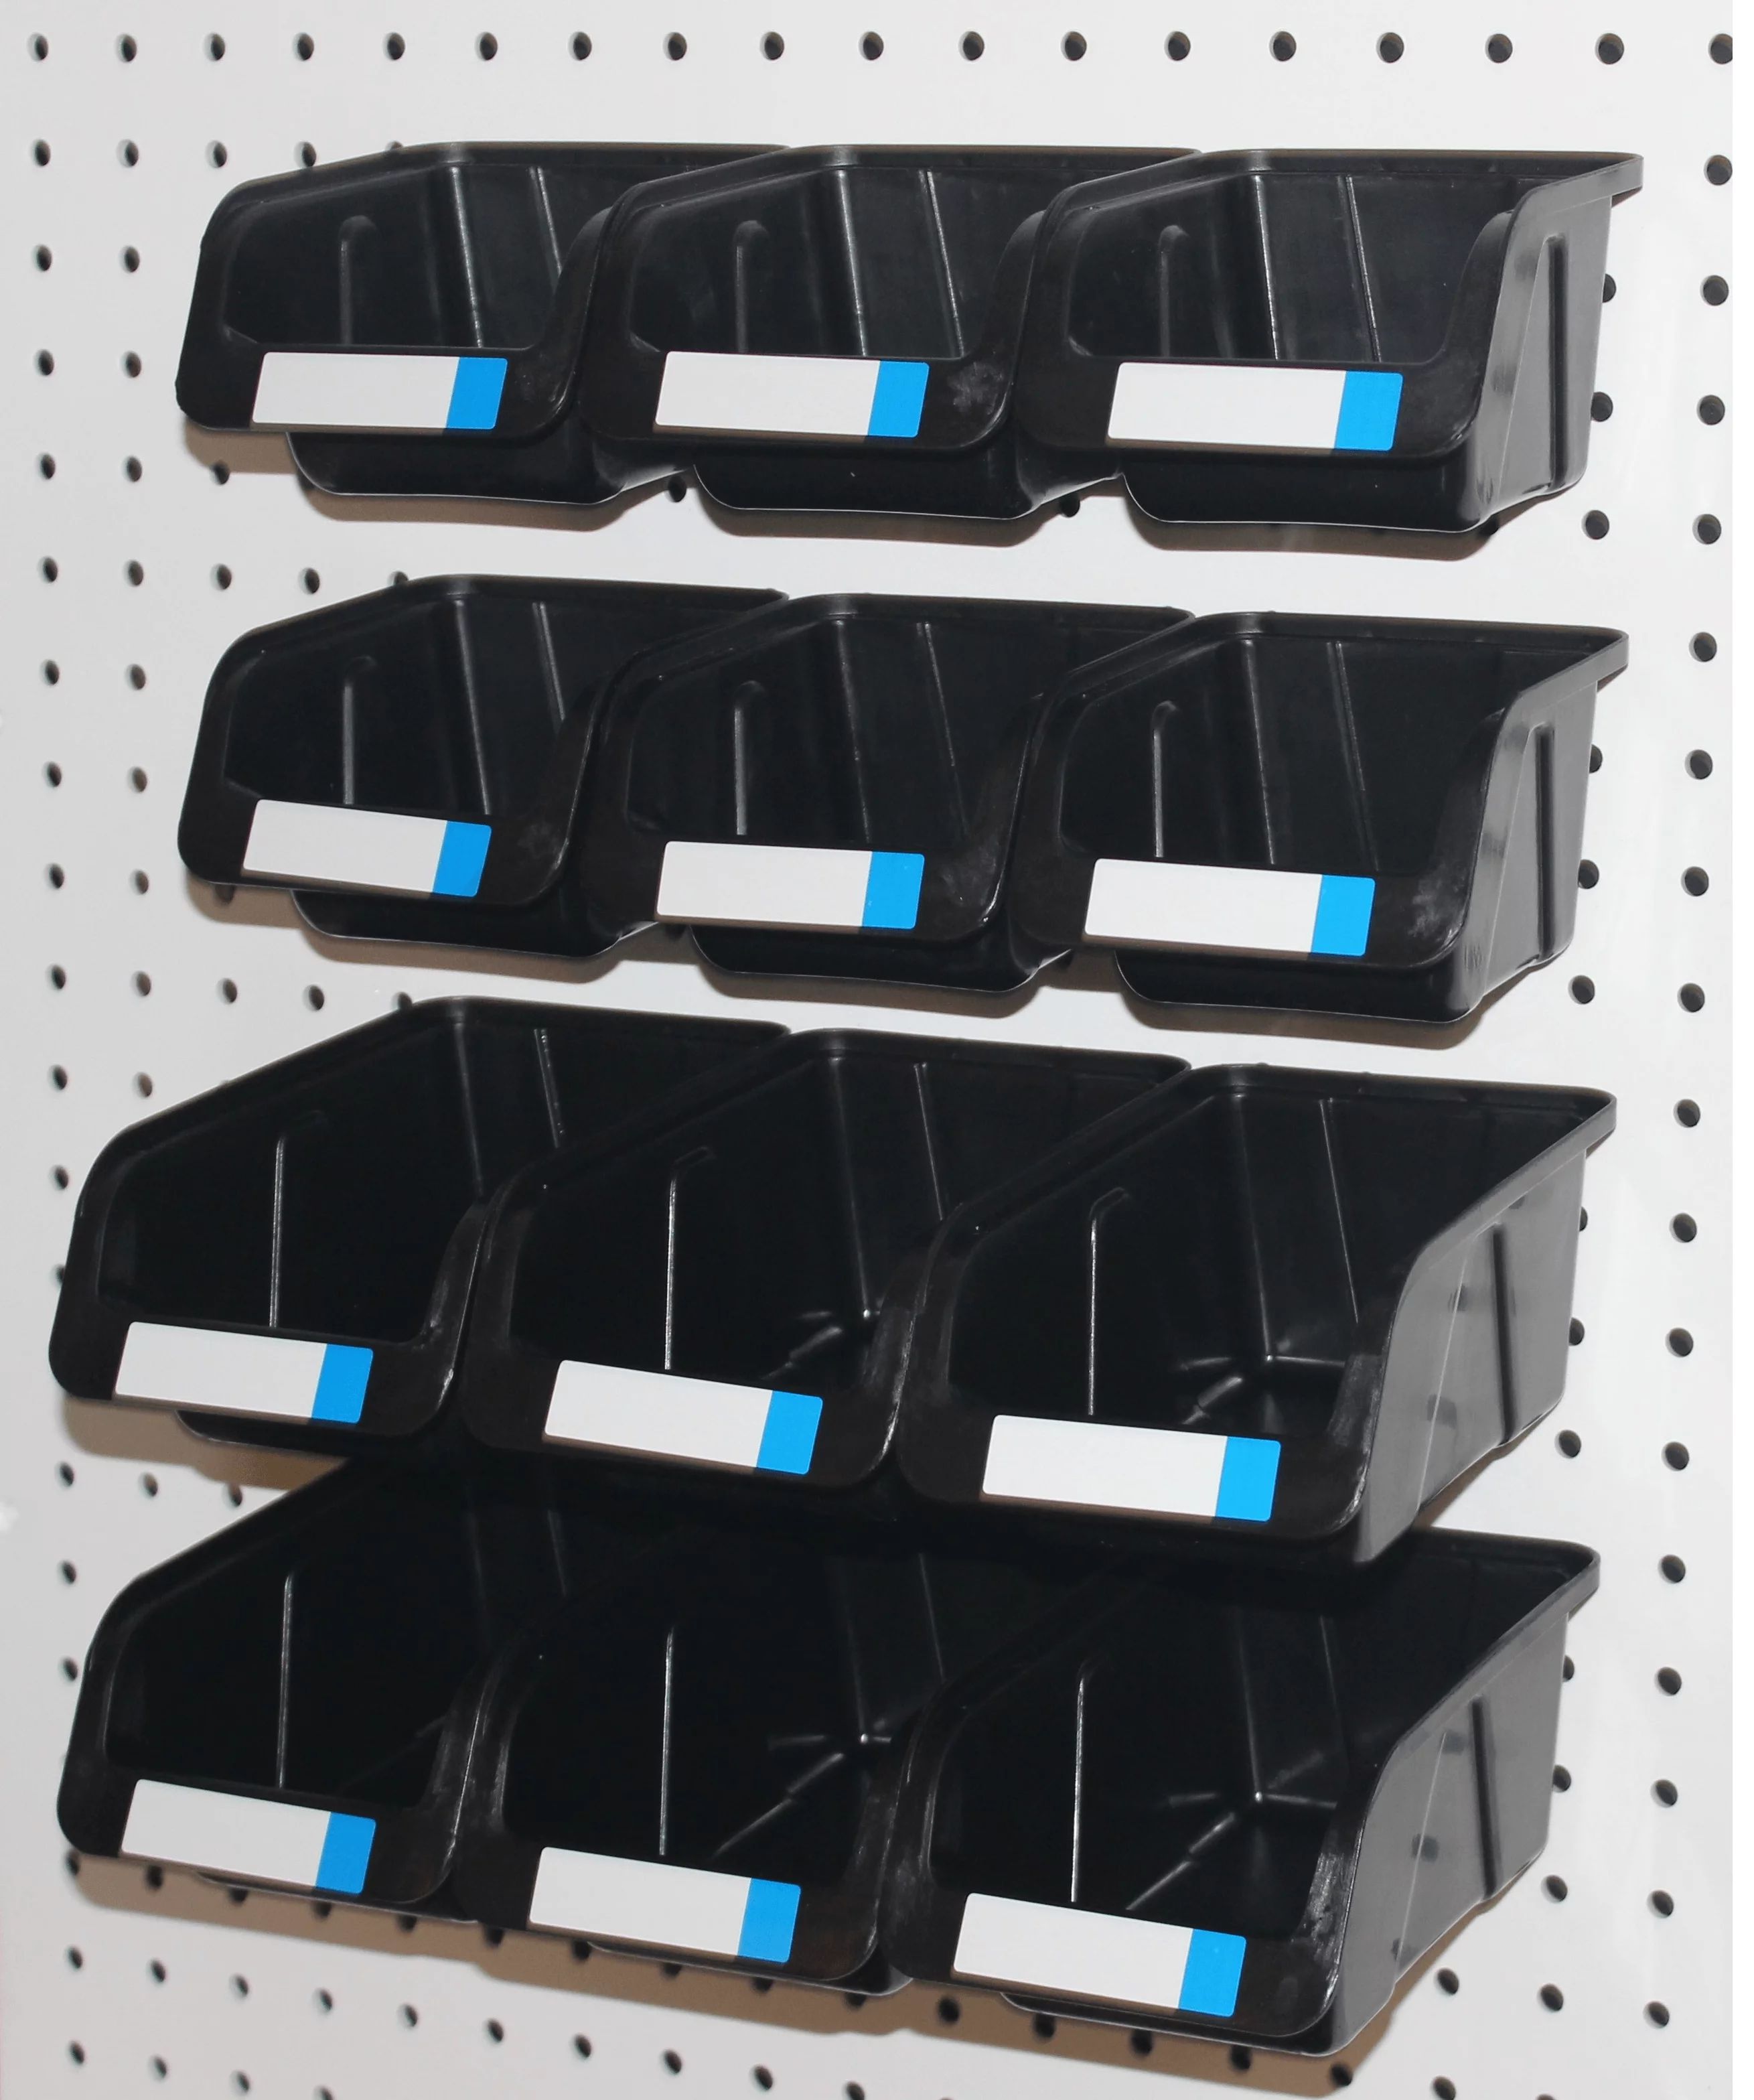 WallPeg Pegboard Bins - 12 Pack - Hooks to Peg Board - Organize Hardware, Accessories, Workbench,... | Walmart (US)